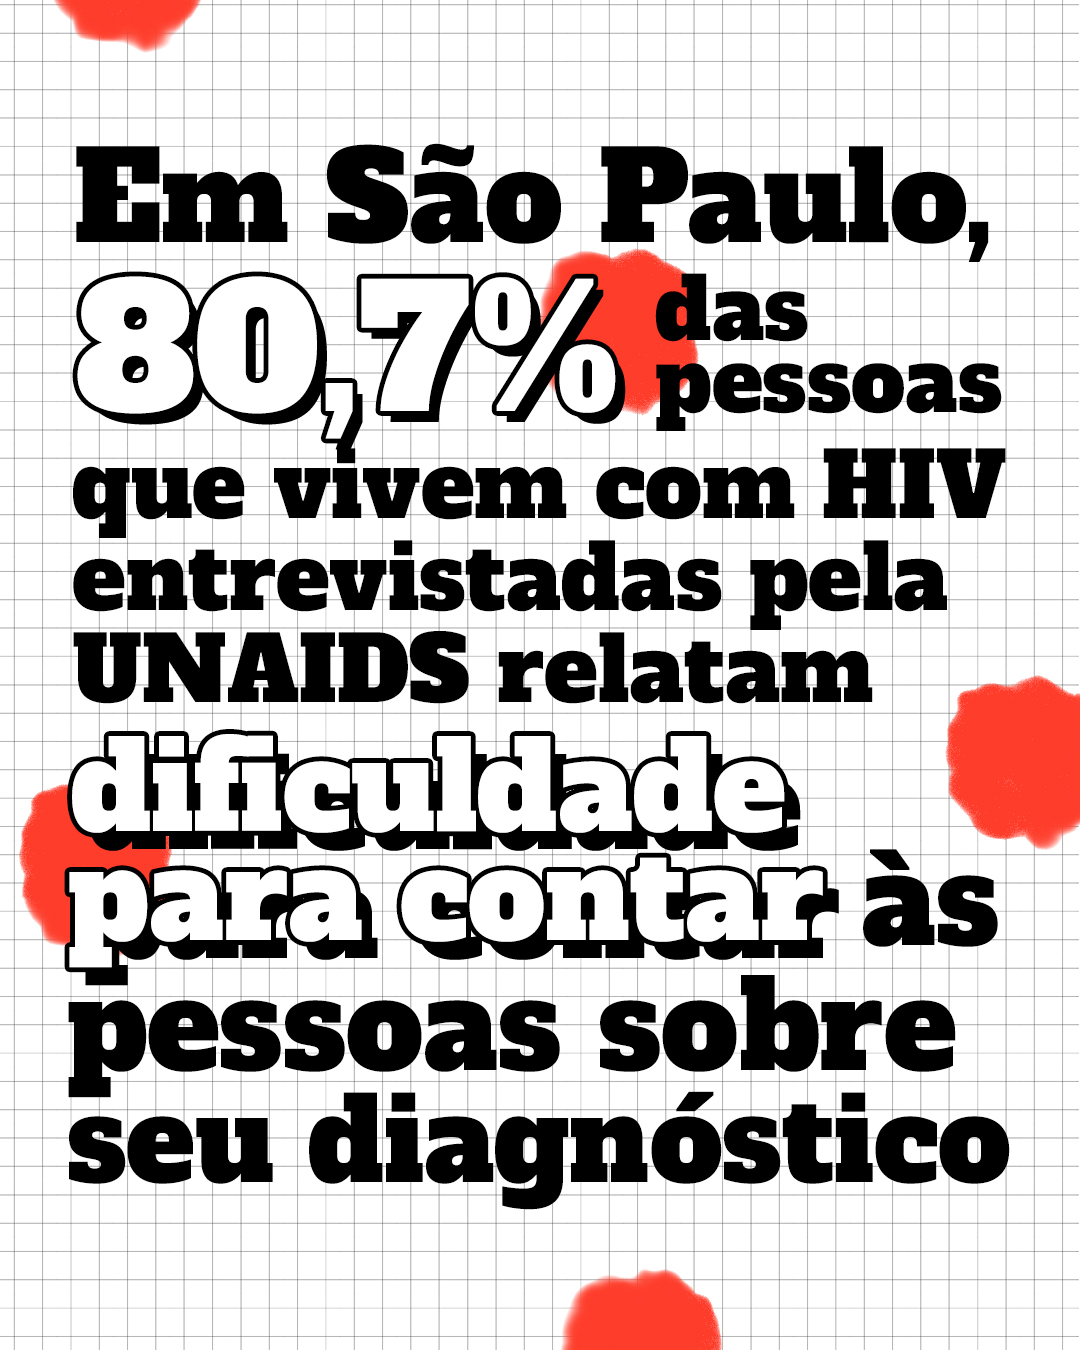 Dados HIV - Imagem com o texto: Em São Paulo 80,7% das pessoas em vivem com HIV entrevistas pela UNAIDS relatam dificuldade para contar às pessoas sobre seu diagnóstico. 